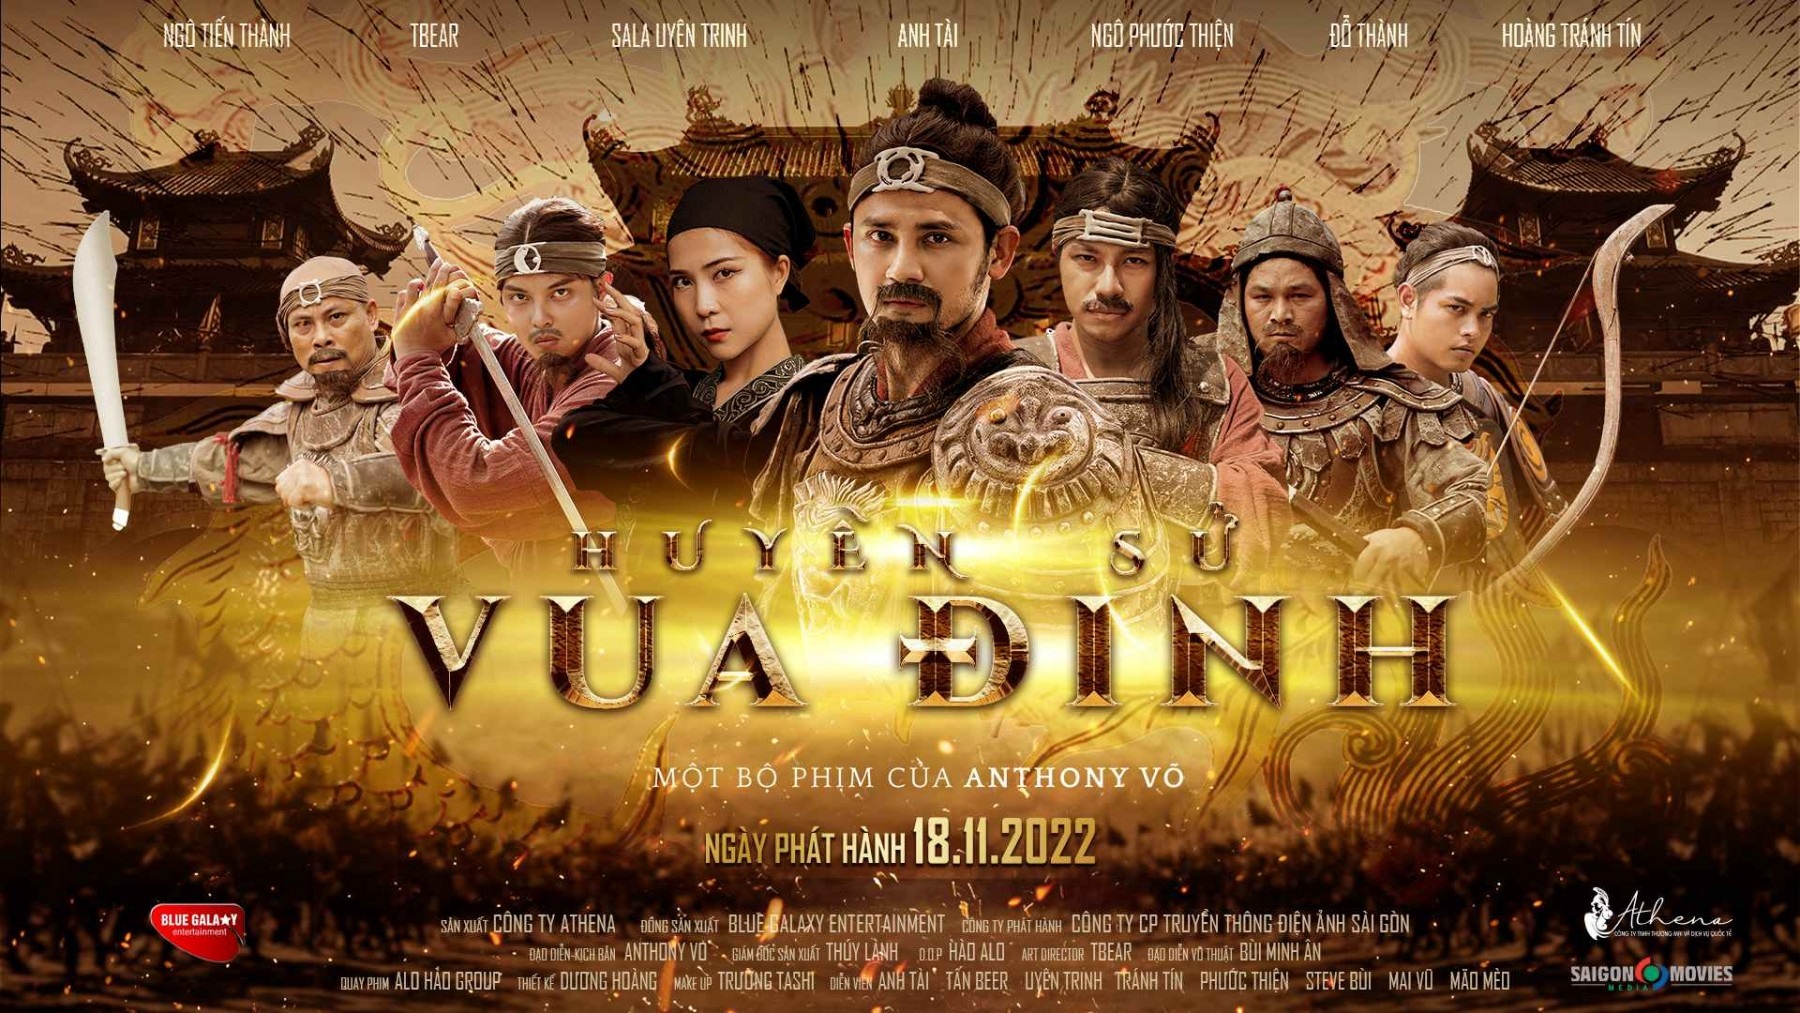 Huyền sử vua Định bị coi là thảm họa phim điện ảnh Việt 2022. Ảnh: Nhà sản xuất